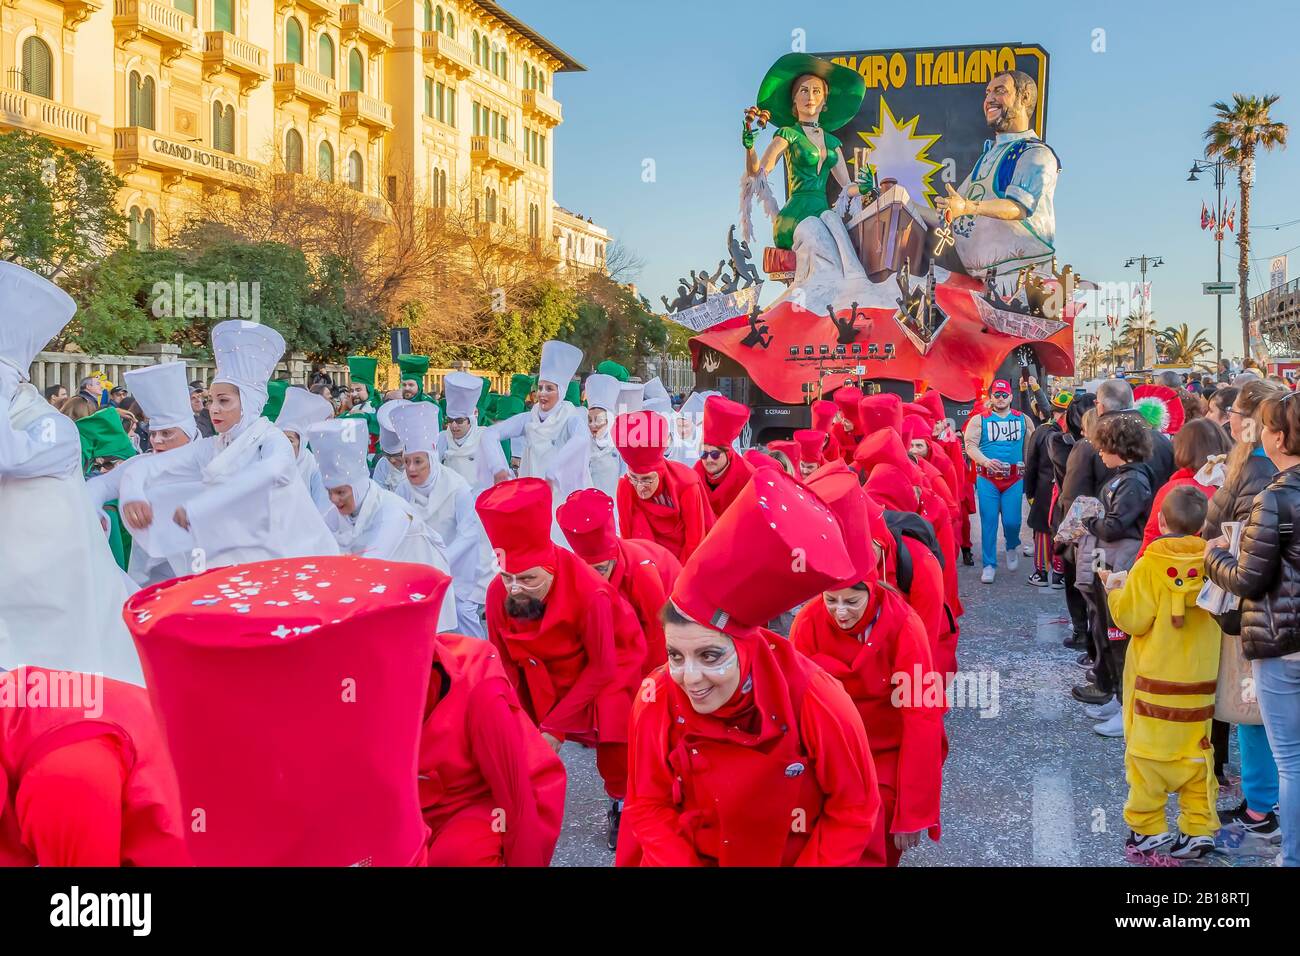 Danseuses aux costumes de la même couleur que la danse du drapeau italien avec le flotteur allégorique "l'amaro italiano" au Carnaval de Viareggio Italie Banque D'Images